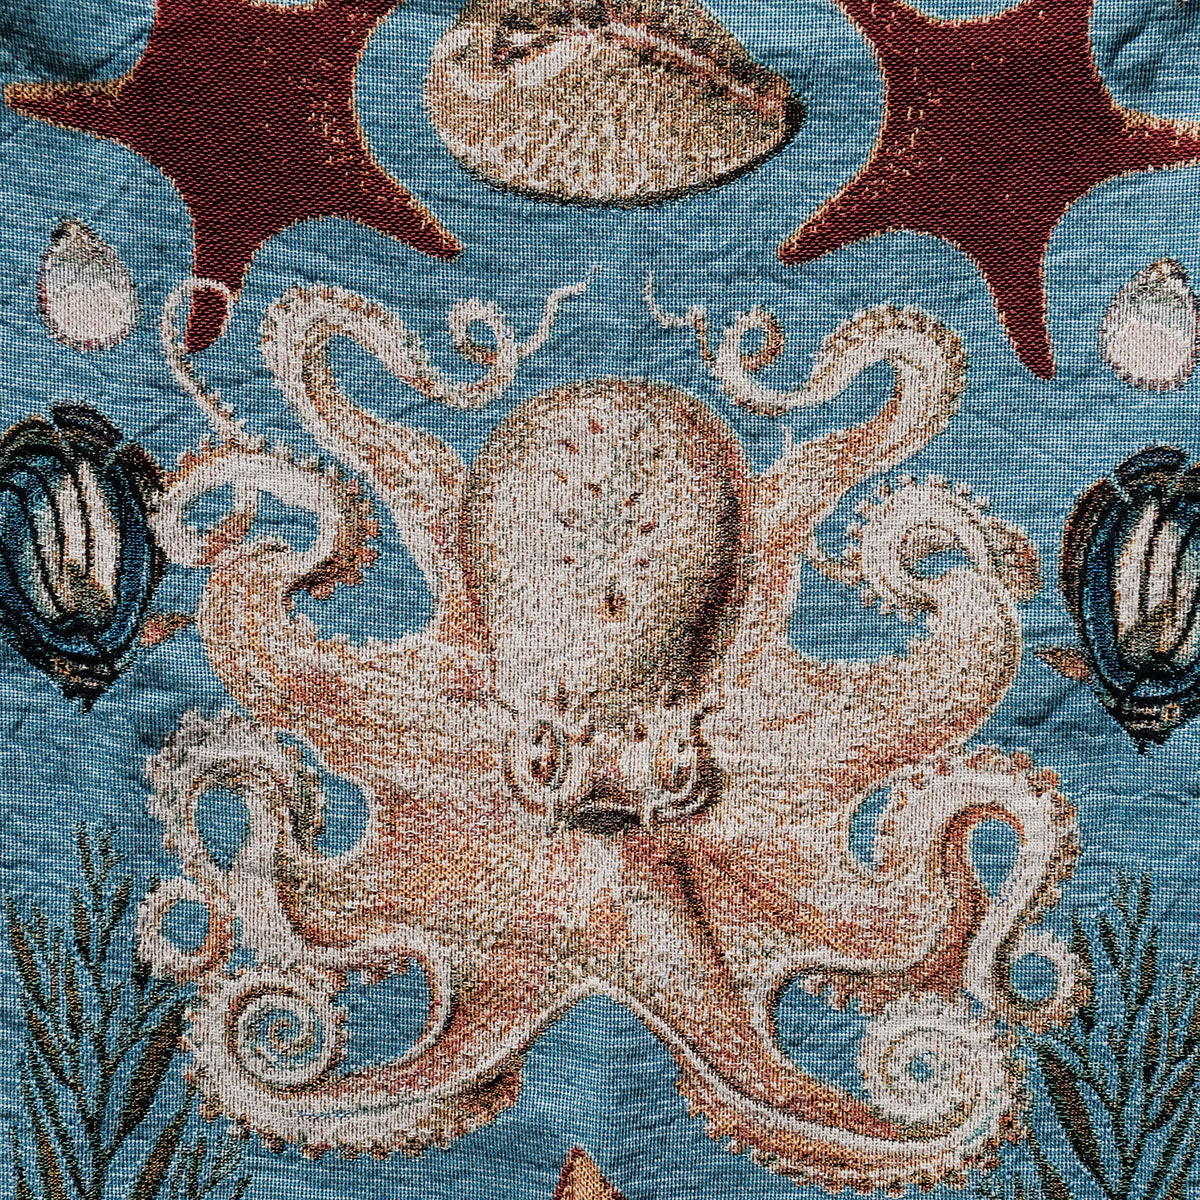 Octopus Ocean Woven Blanket